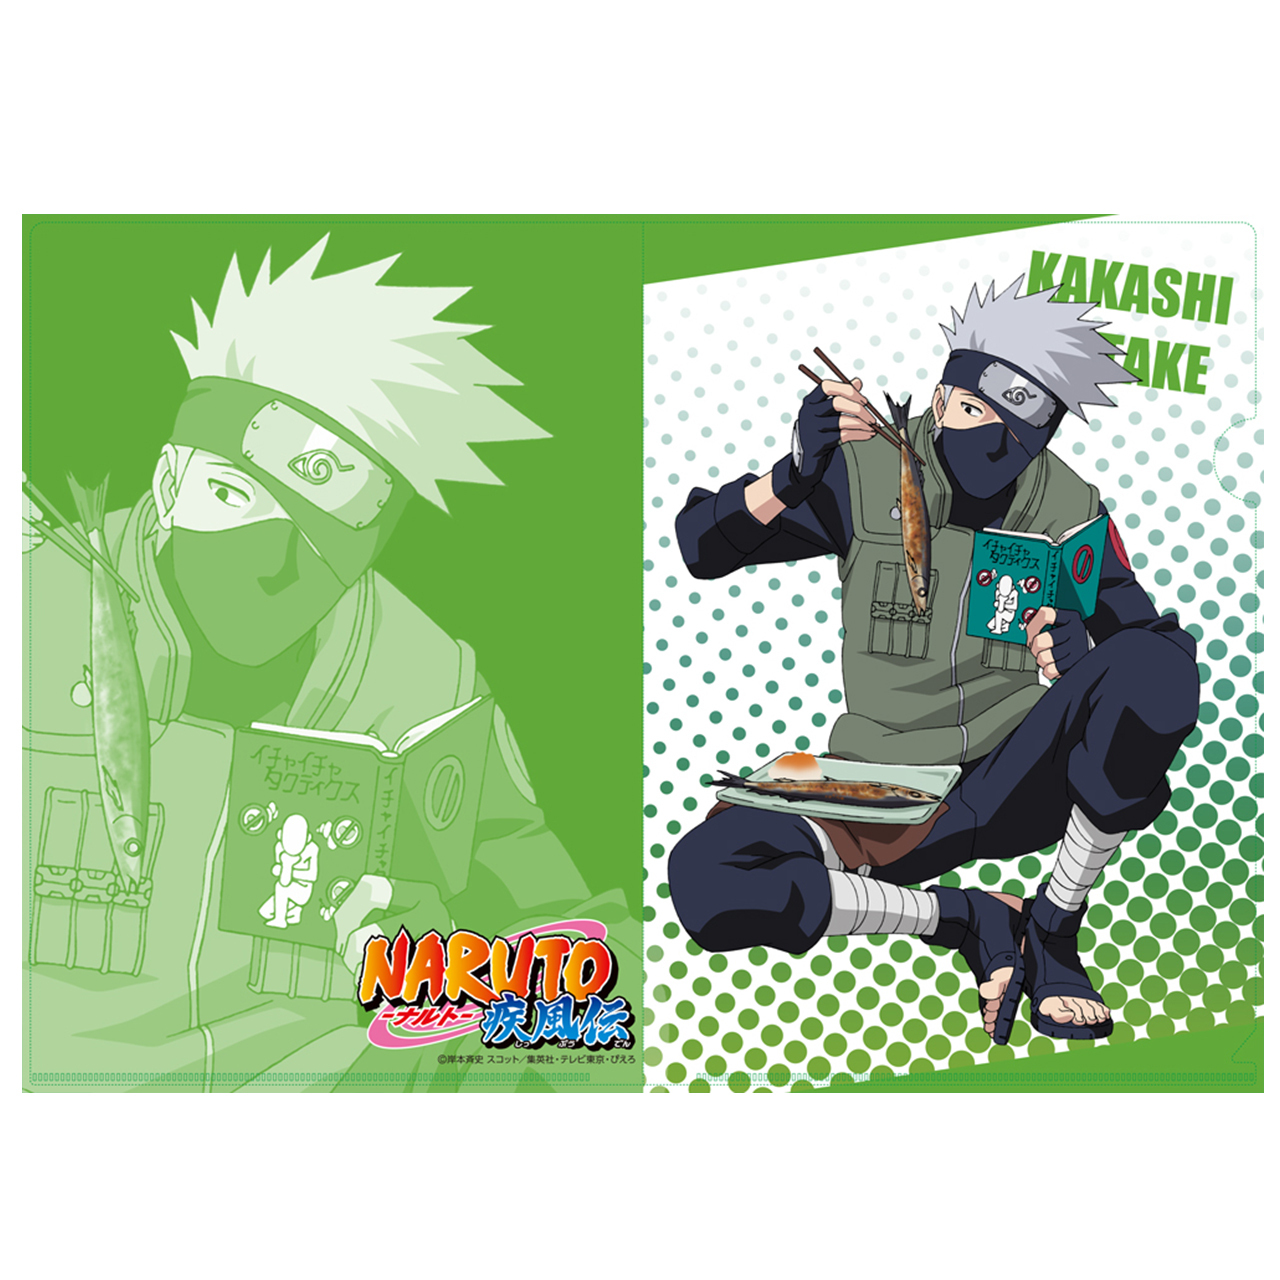 Naruto 描き下ろし ａ４クリアファイル カカシ エムズファクトリーオフィシャルオンラインストア